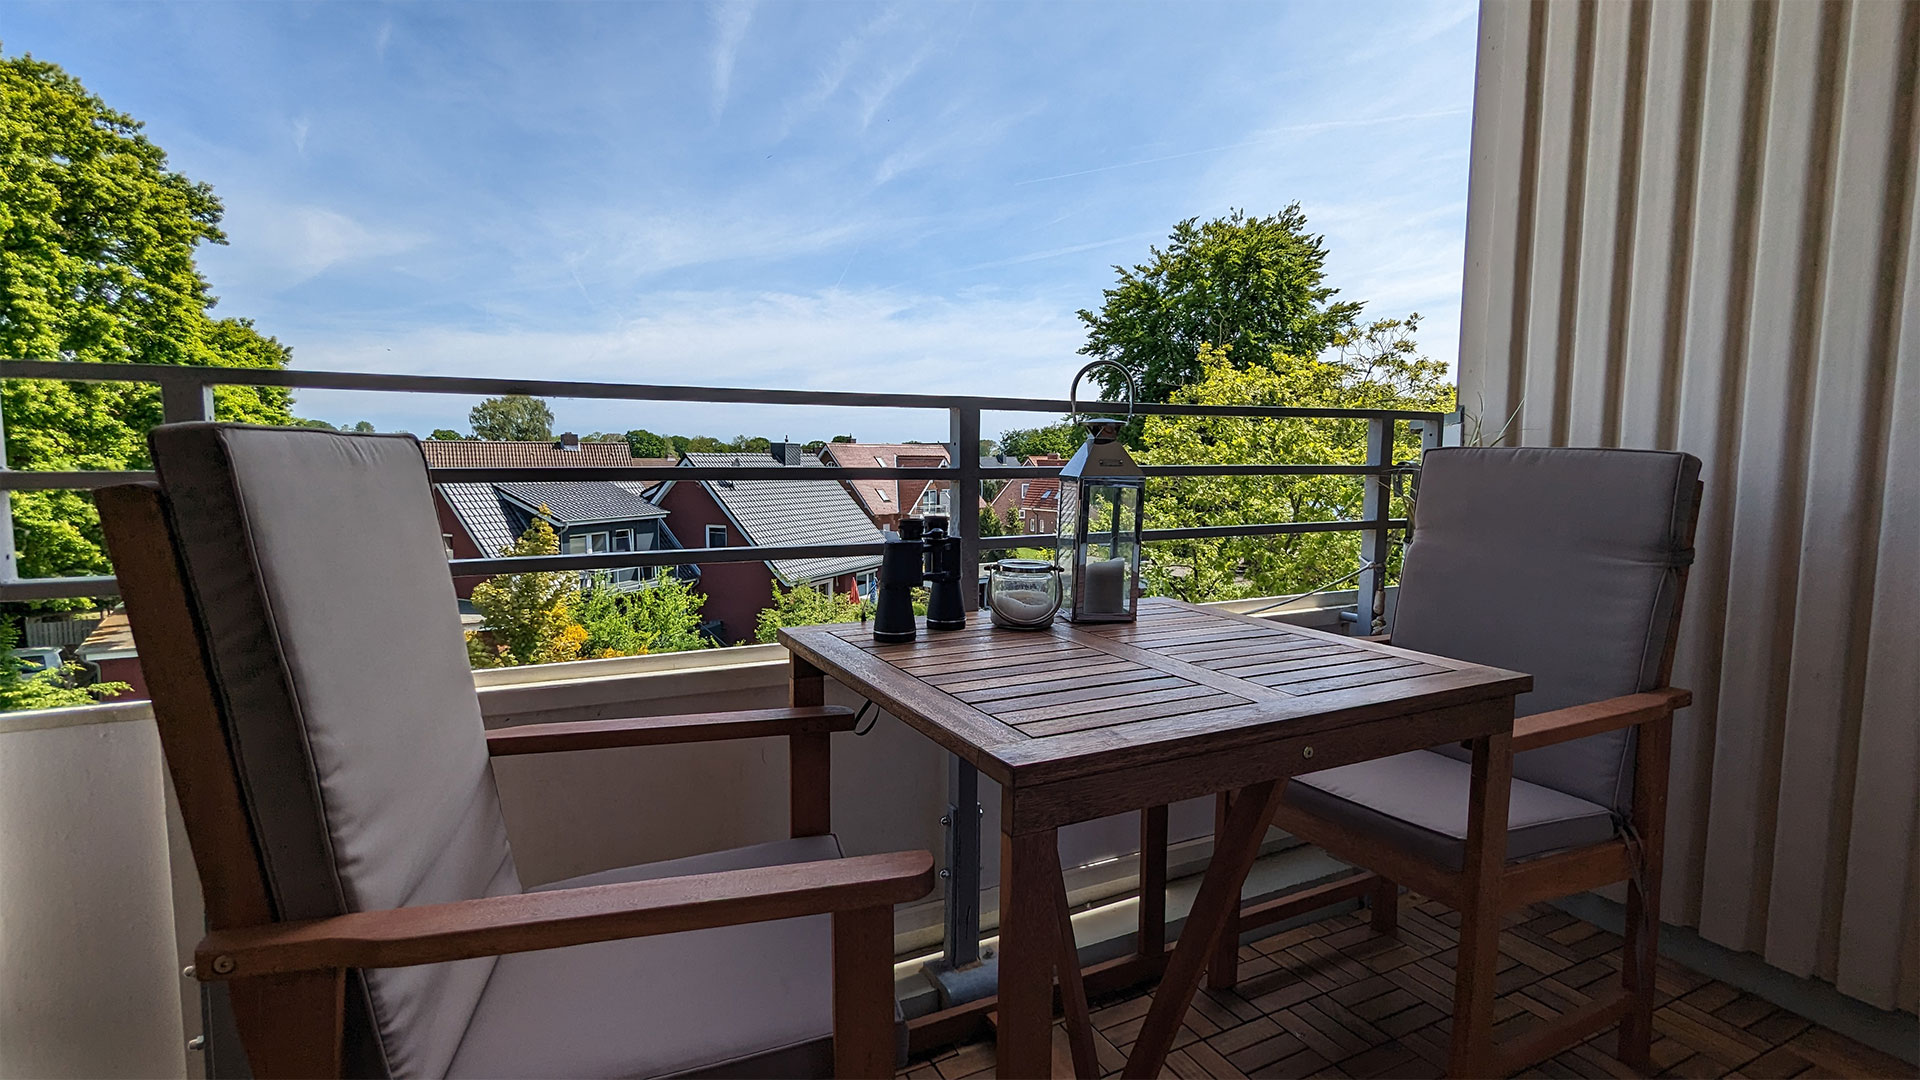 verkauft - renovierte Wohnung mit Balkon 150m zum Strand Kellenhusen